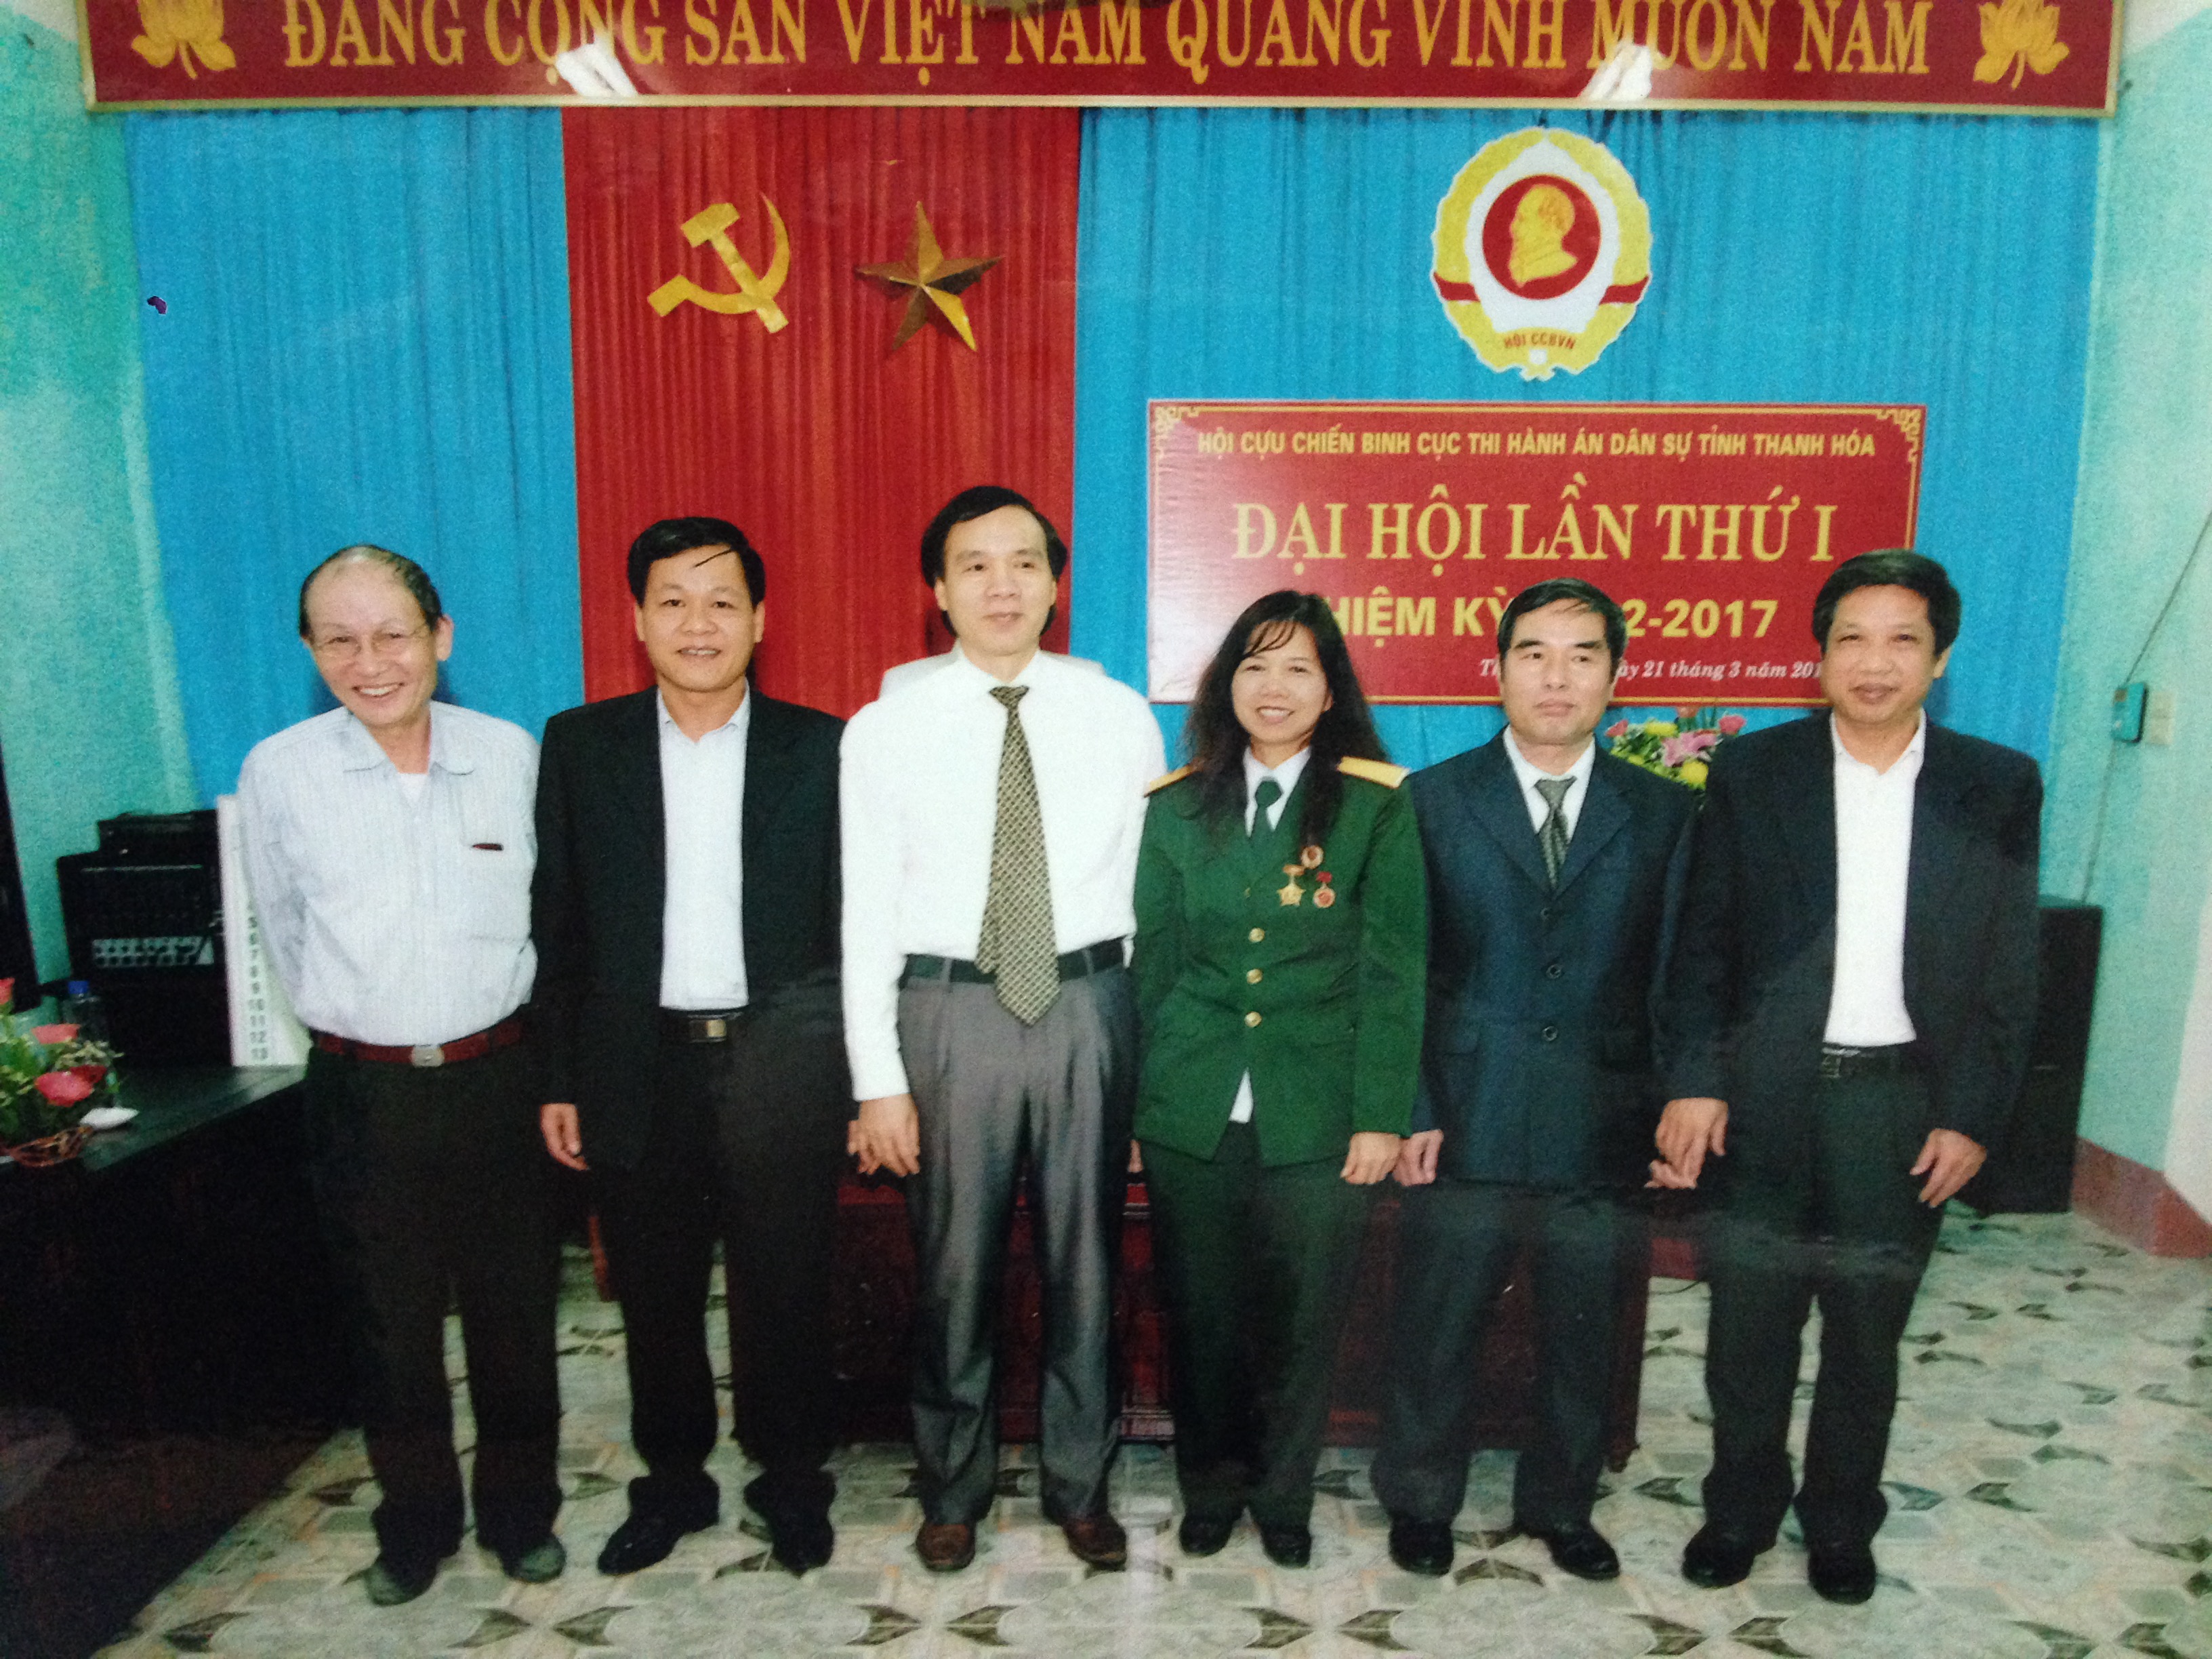 Hội Cựu chiến binh Cục Thi hành án dân sự tỉnh Thanh Hóa Đại hội lần thứ nhất, nhiệm kỳ (2012 - 2017)